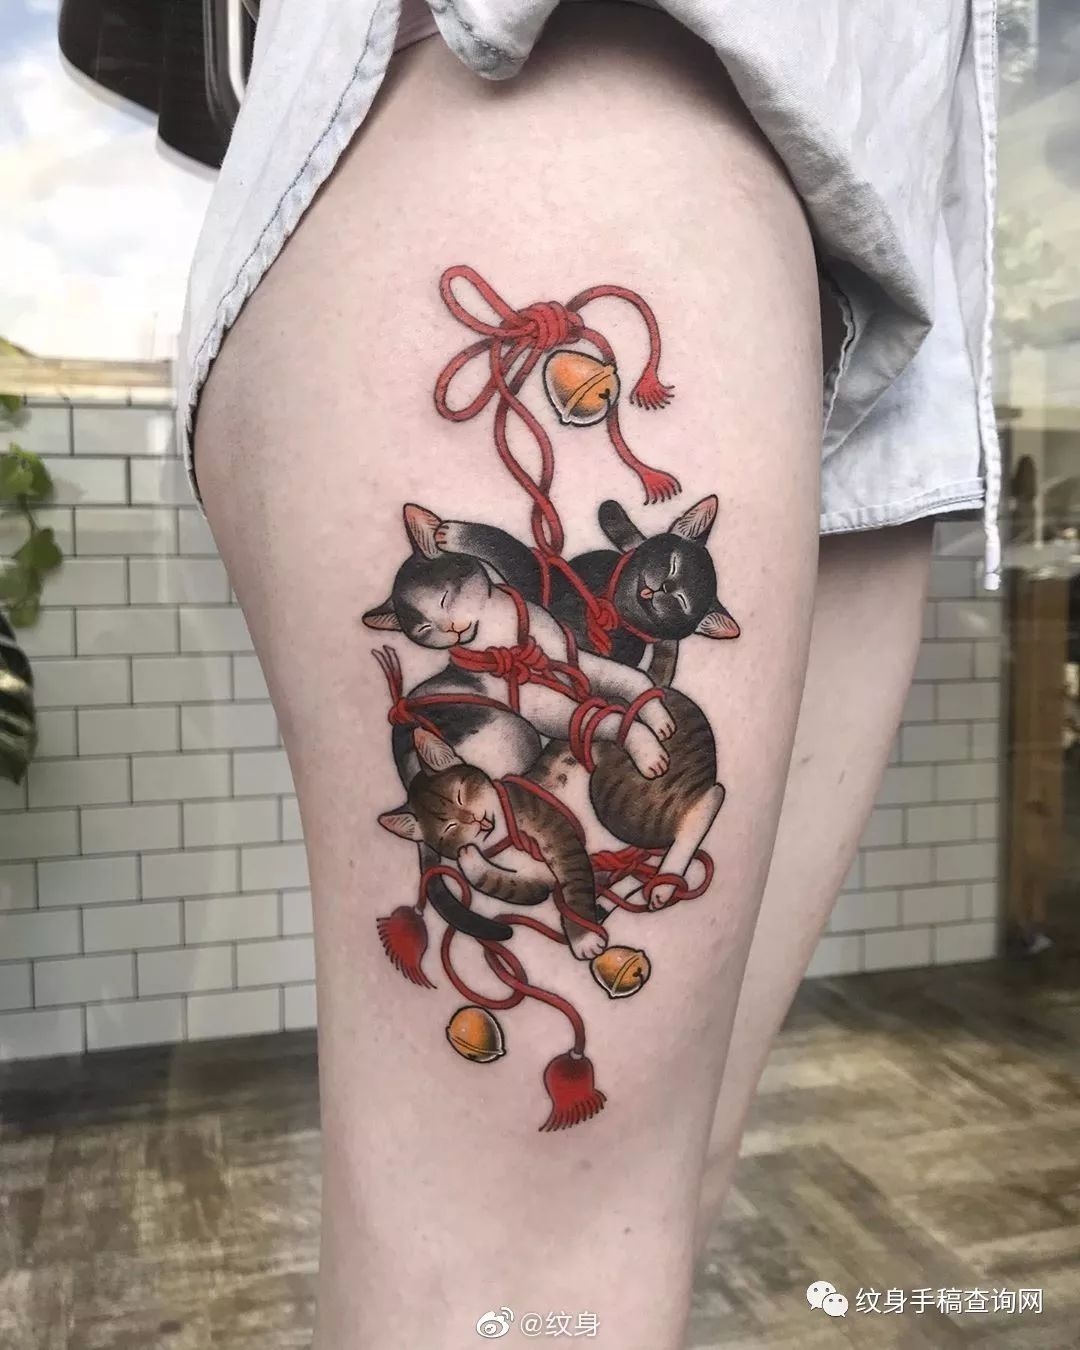 10张文在腿部的萌萌猫纹身作品大全图片